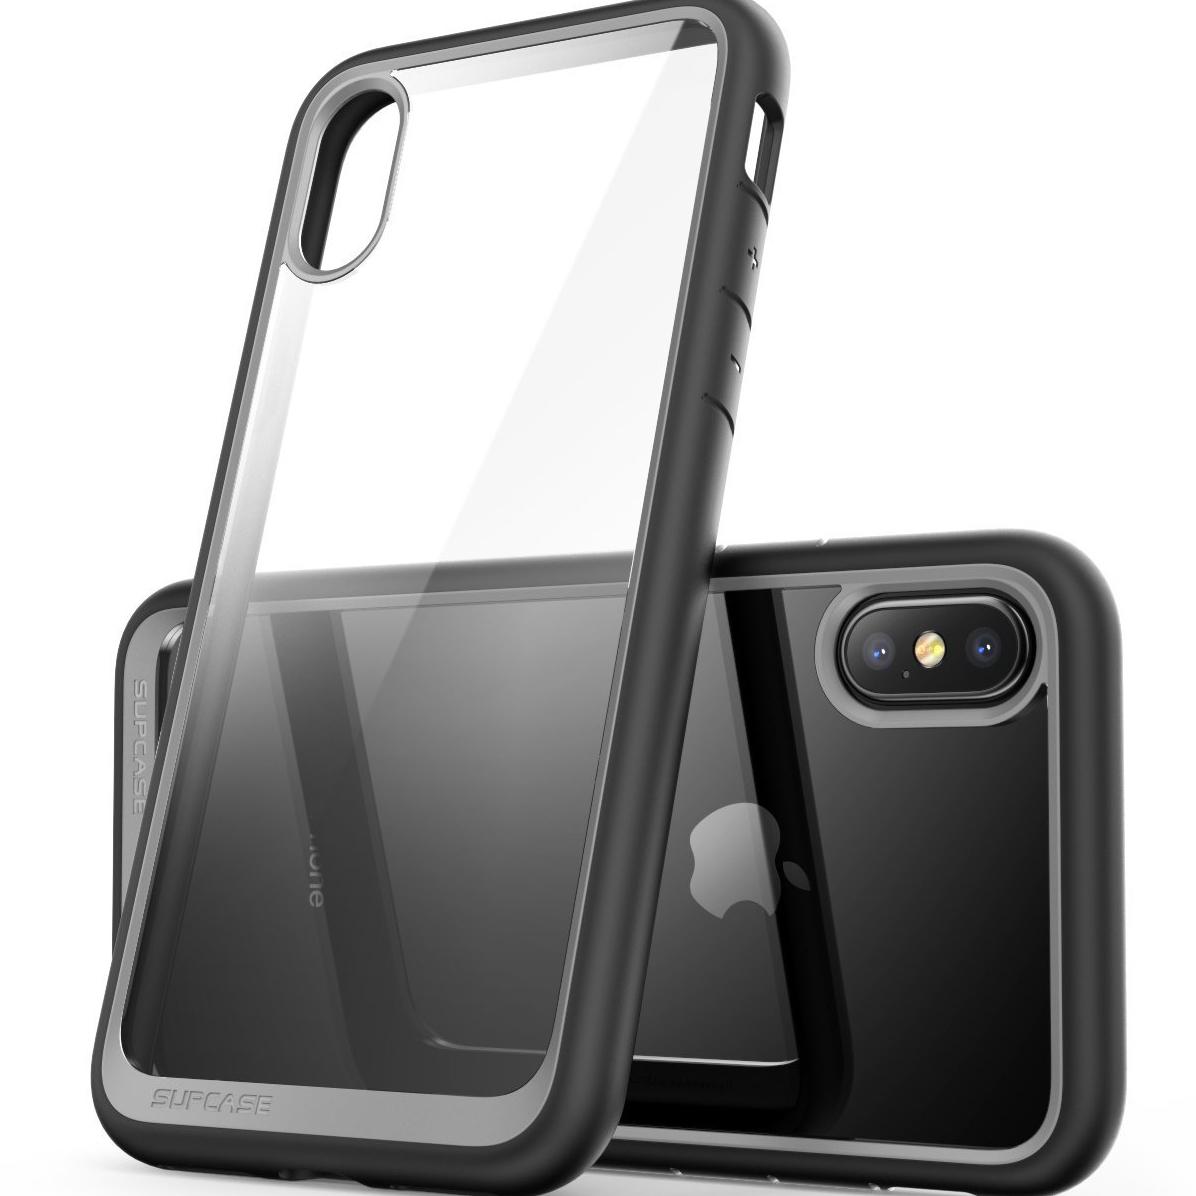 美国亚马逊 iPhone8、iPhone 8 Plus、iPhone X手机配件专场